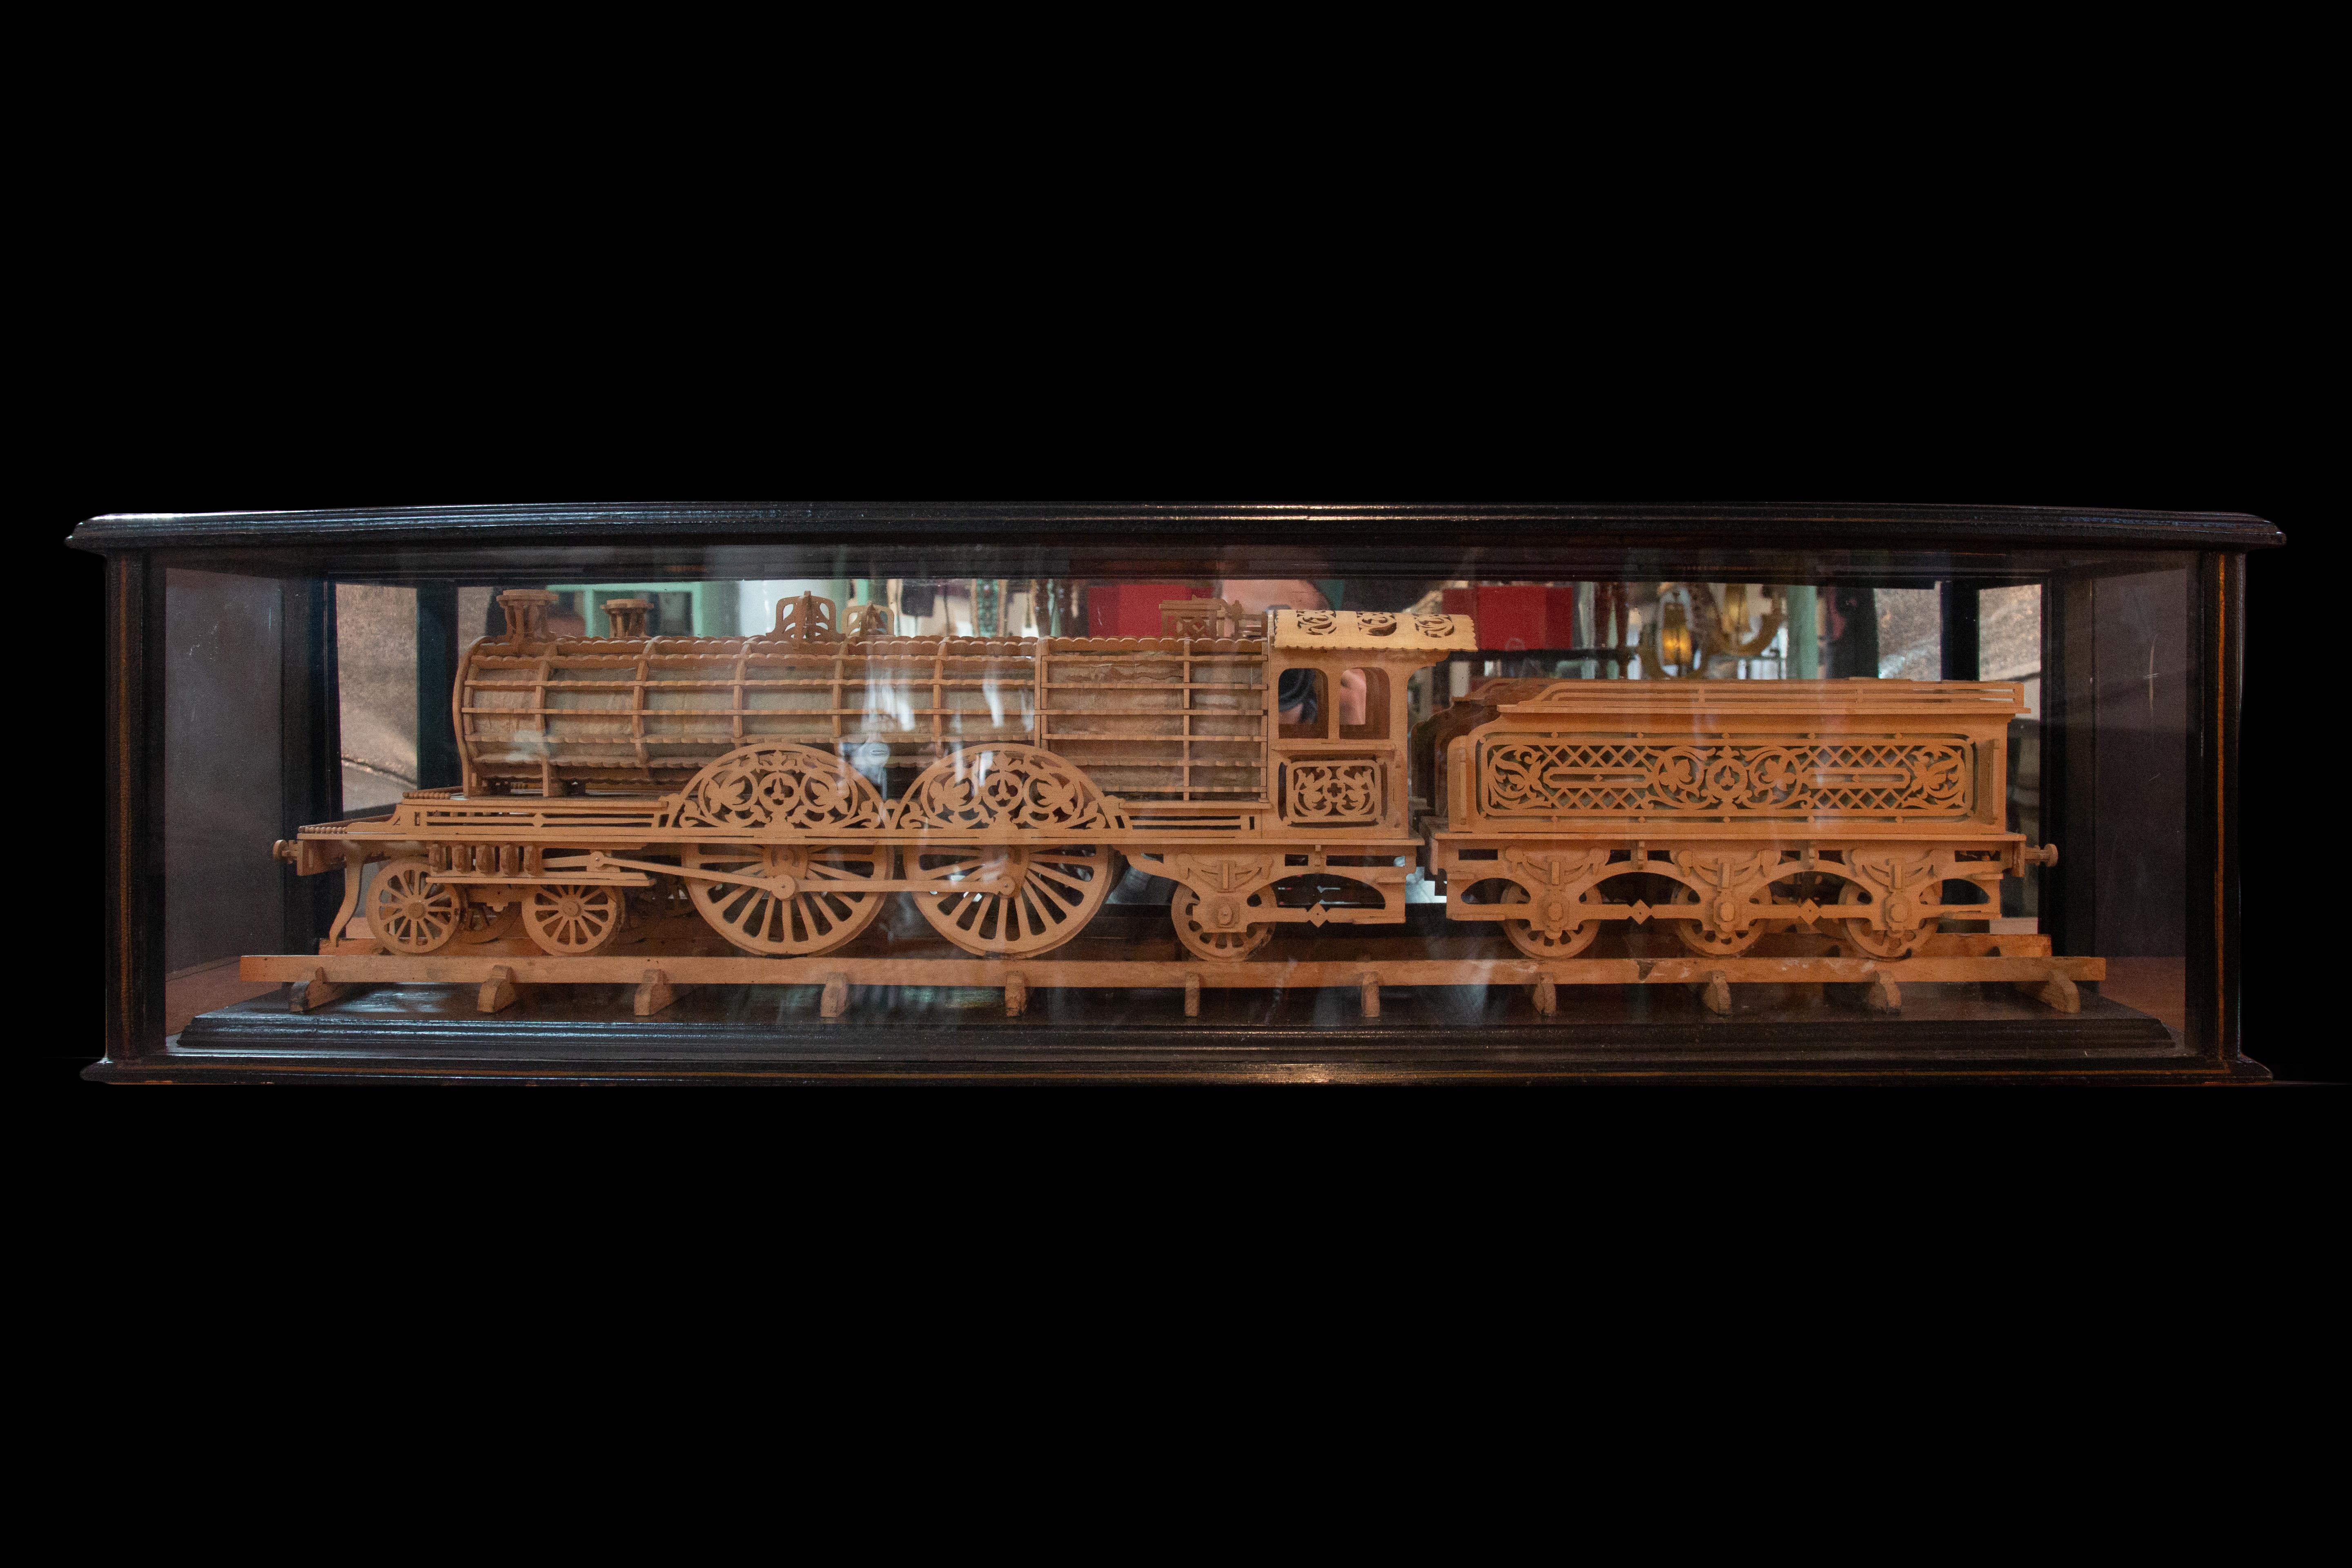 Geschnitztes Holzmodell einer Lokomotive in einem glasierten und bemalten Holzkasten. Dieses kunstvoll gearbeitete Stück fängt das Wesen einer Lokomotive mit erstaunlicher Liebe zum Detail ein. Das Modell misst beeindruckende 42 1/2 Zoll in der